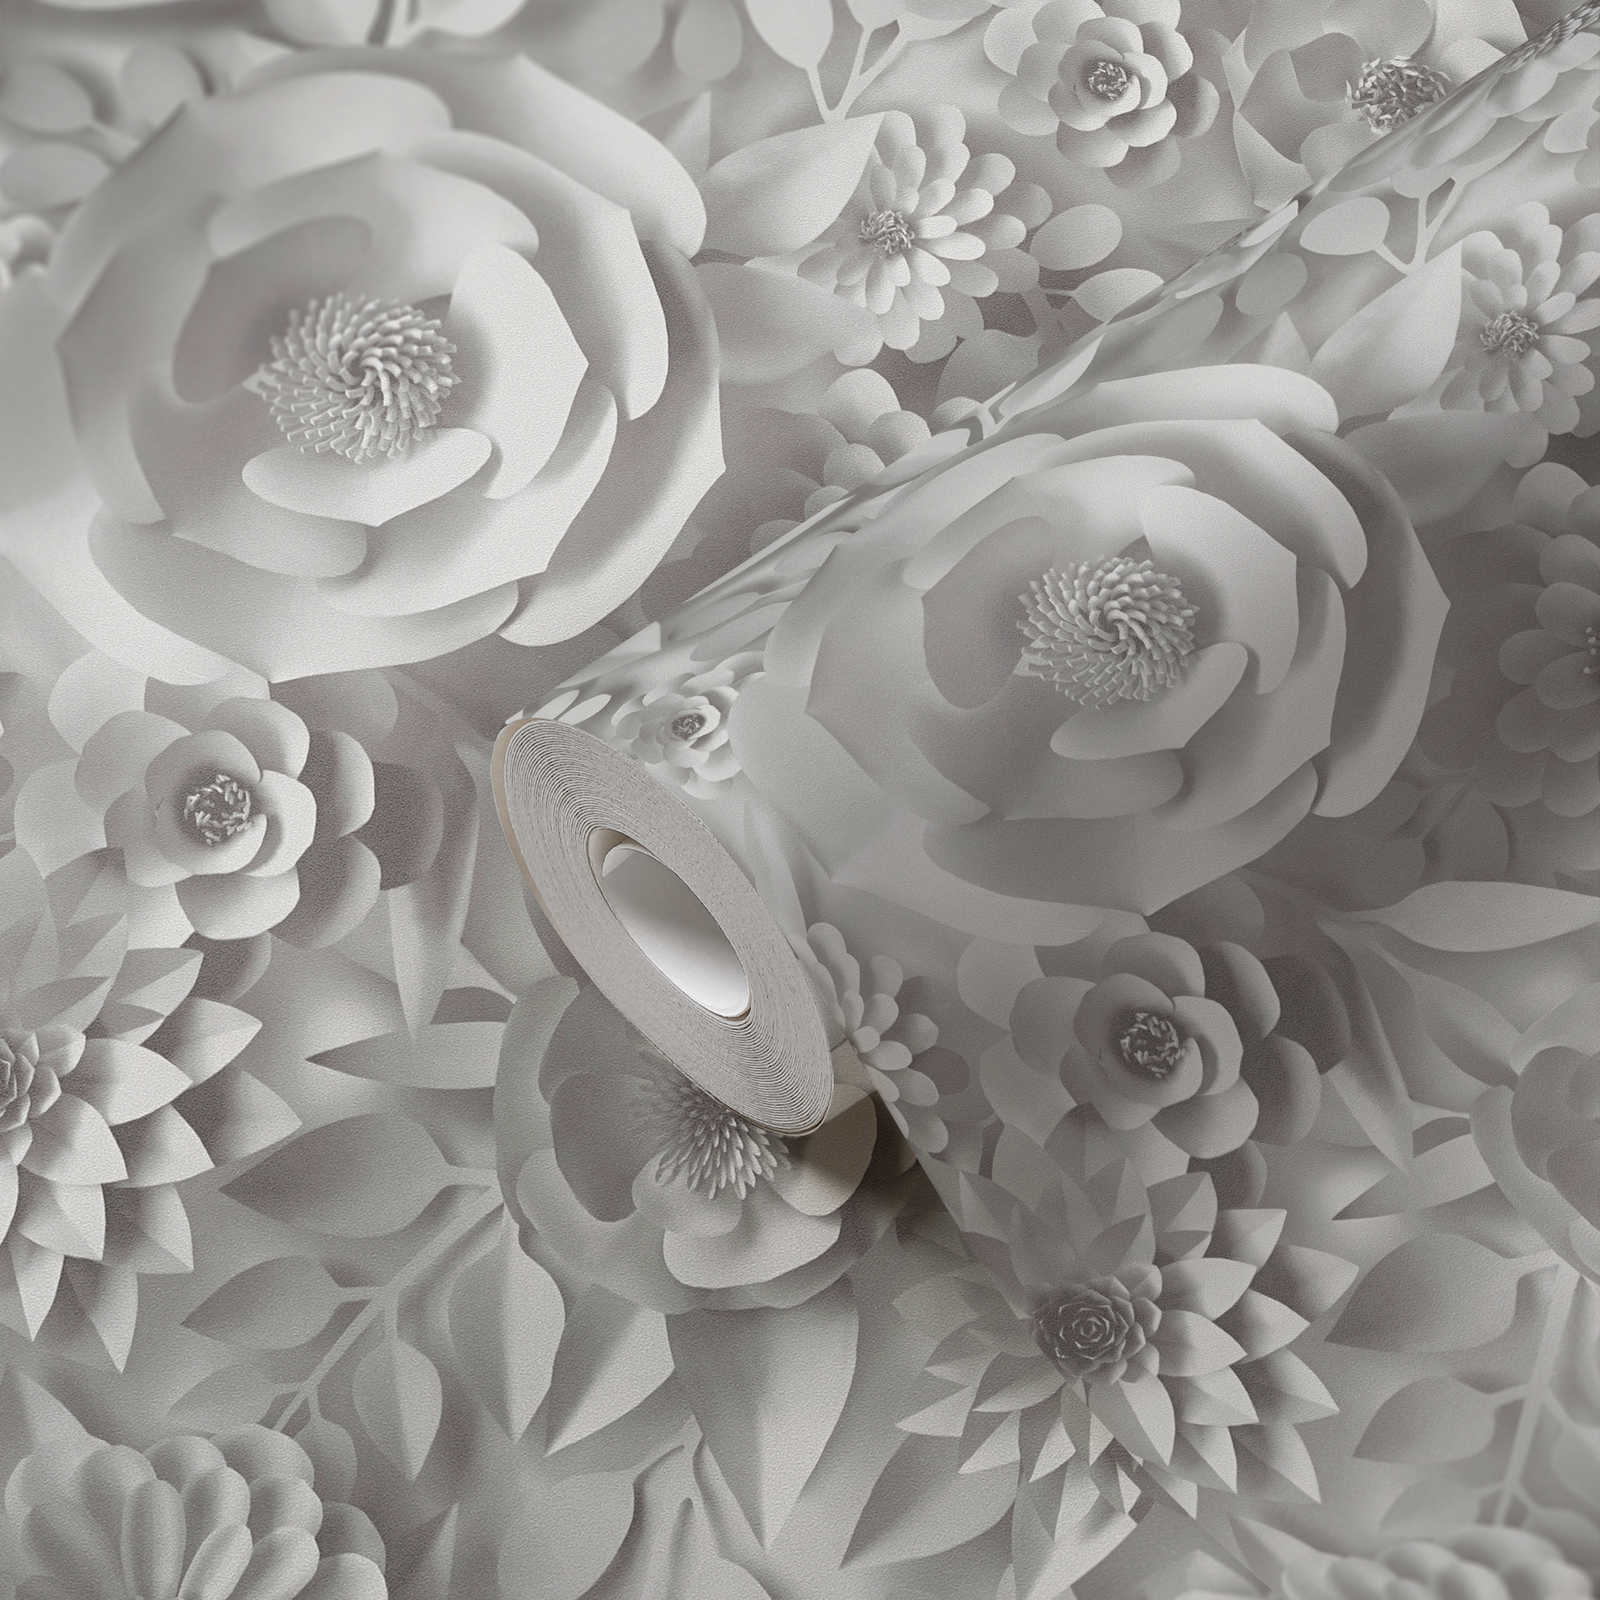             Papier peint 3D avec fleurs en papier, motif graphique de fleurs - blanc
        